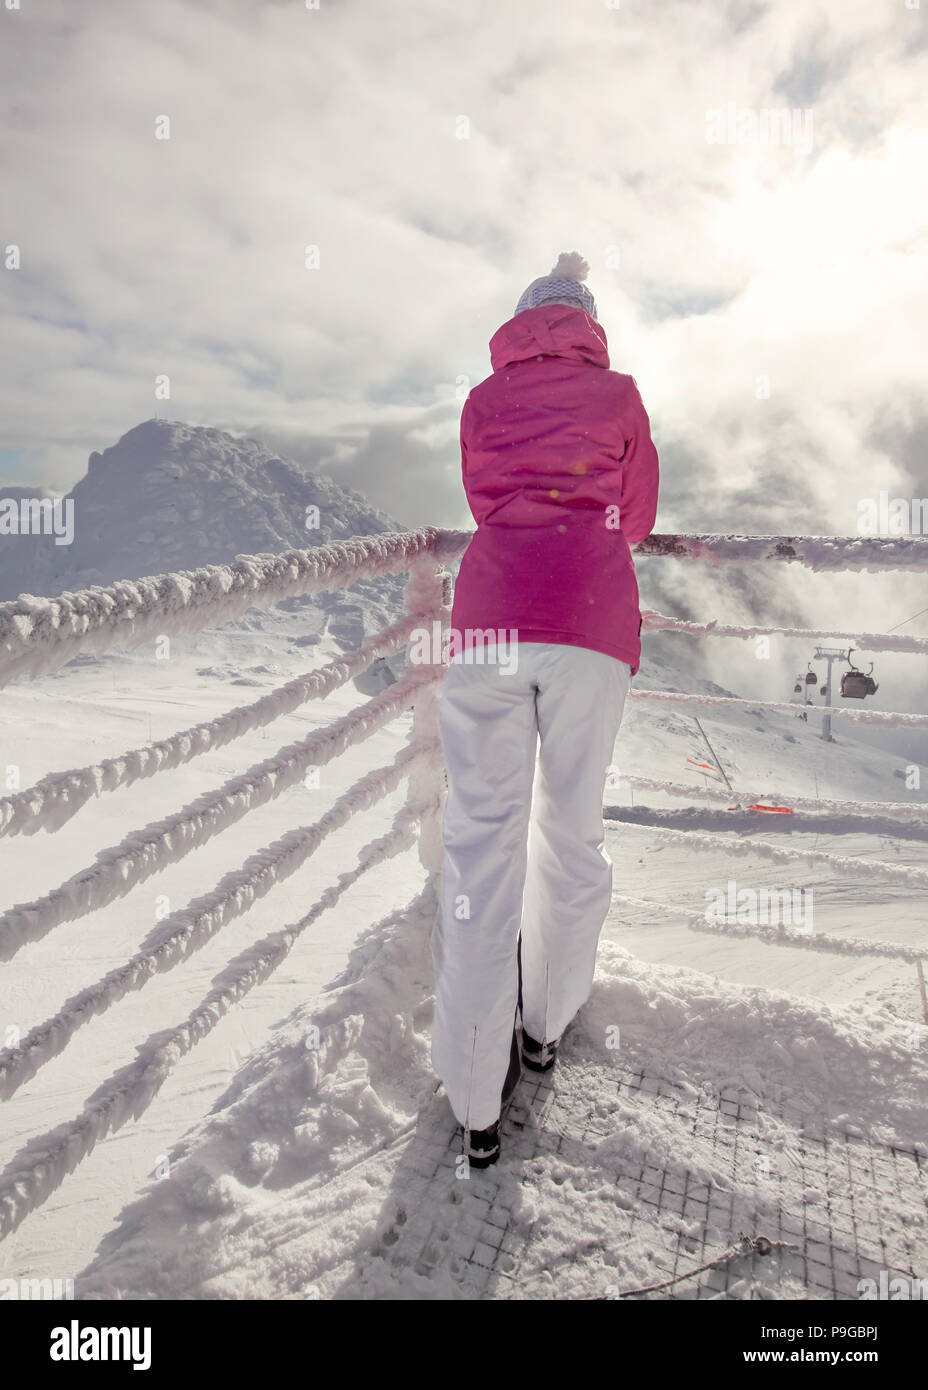 Frau in rosa Winterjacke lehnte sich auf Schnee bedeckten Rampe, Skipisten, mit Sonne und Wolken im Hintergrund Hintergrundbeleuchtung. Stockfoto